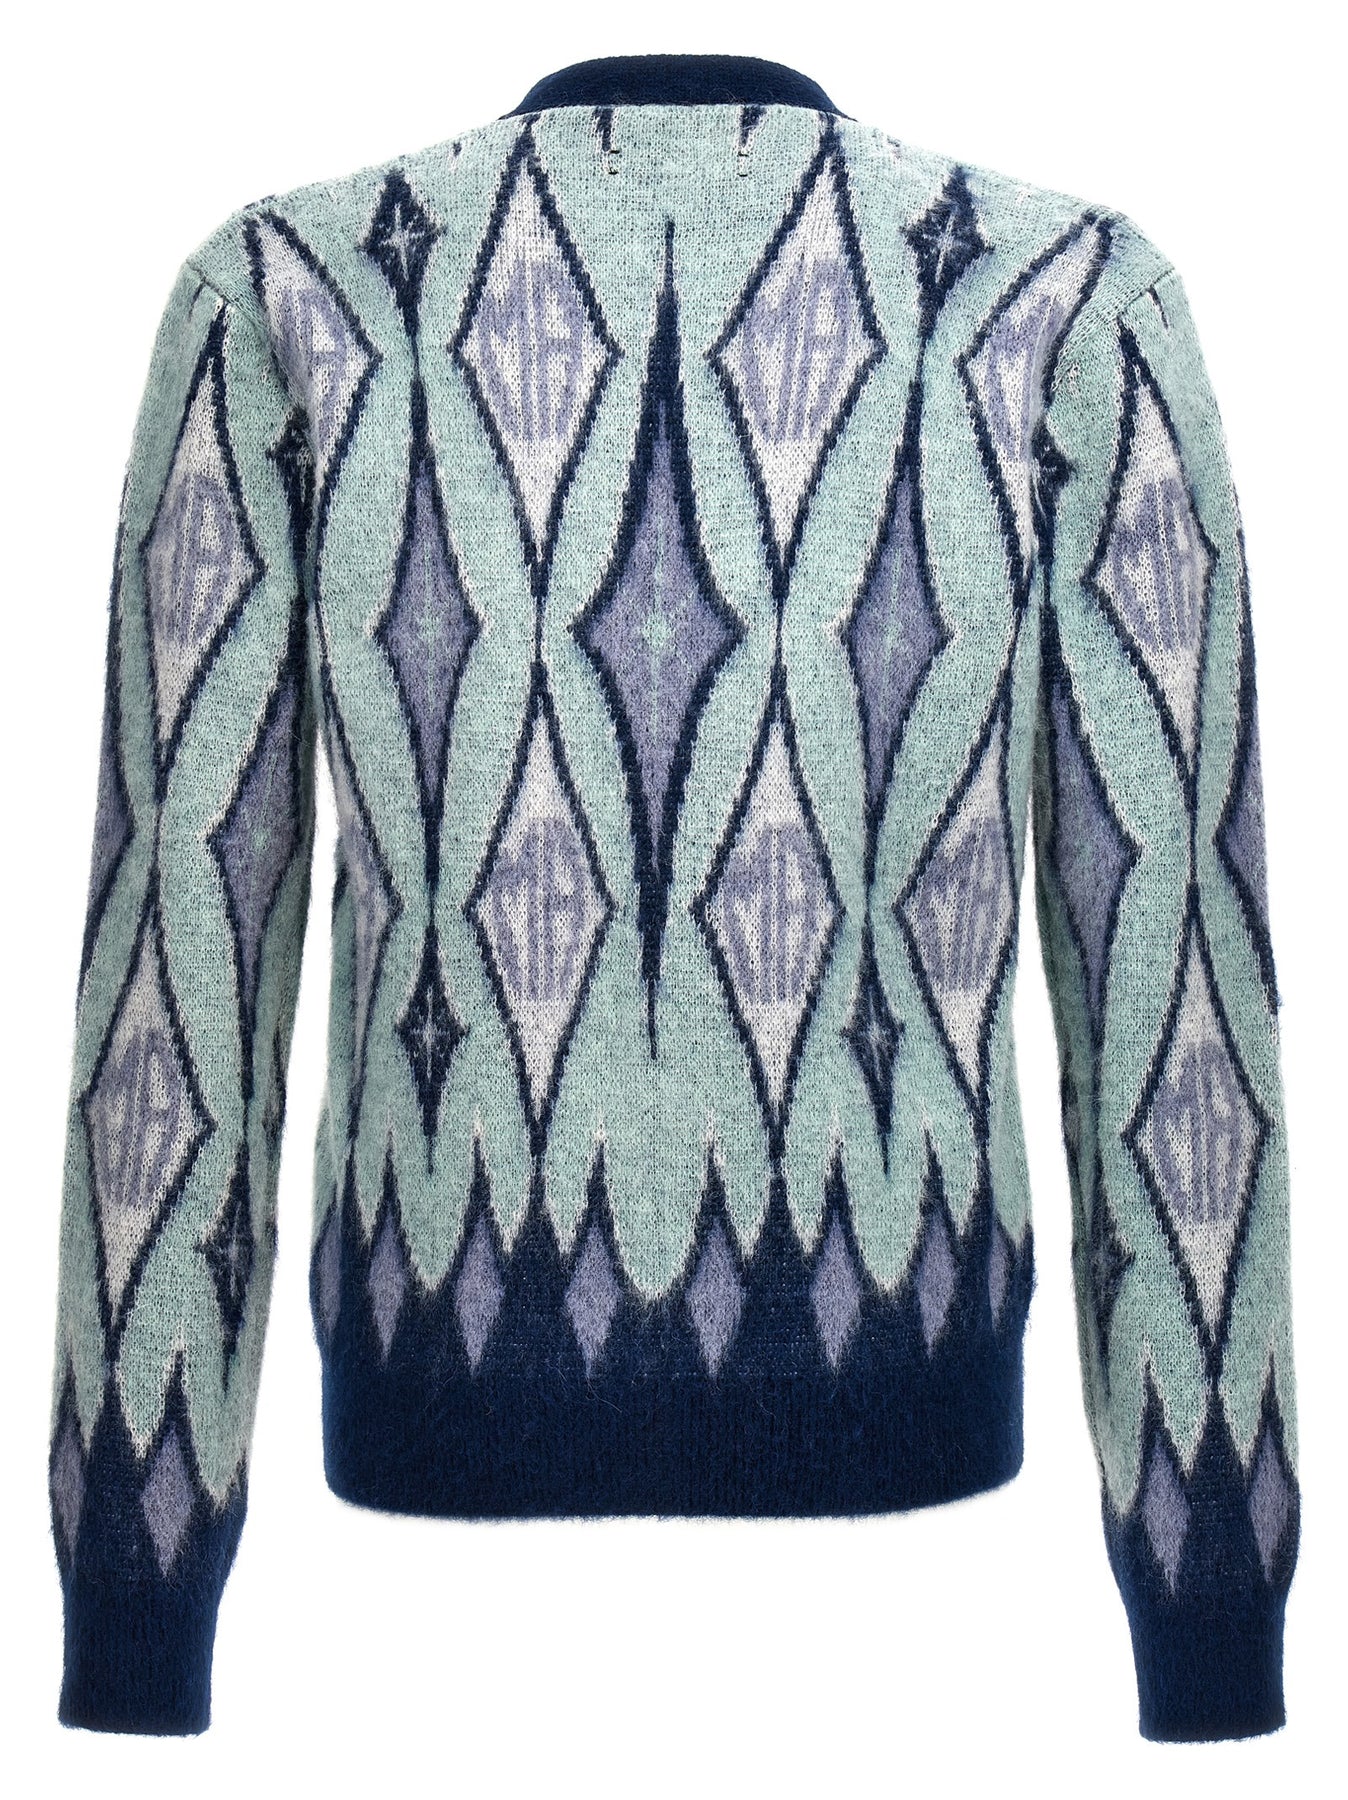 Shop Amiri Argyle Sweater, Cardigans